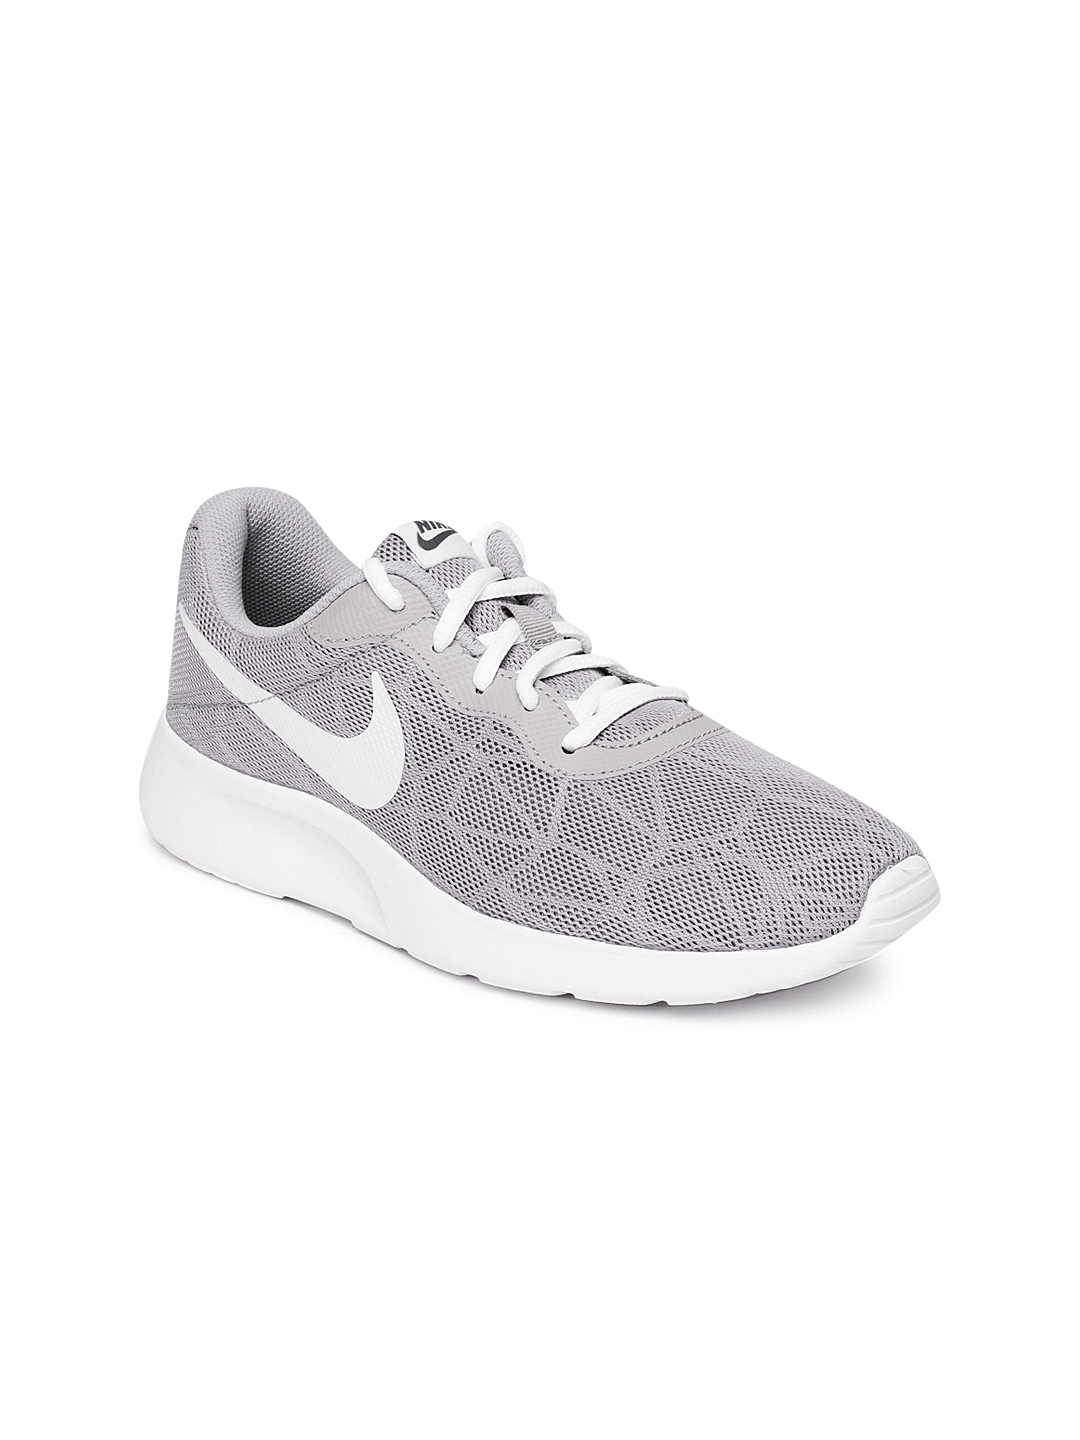 Buy Nike Women Grey Tanjun SE Sneakers 